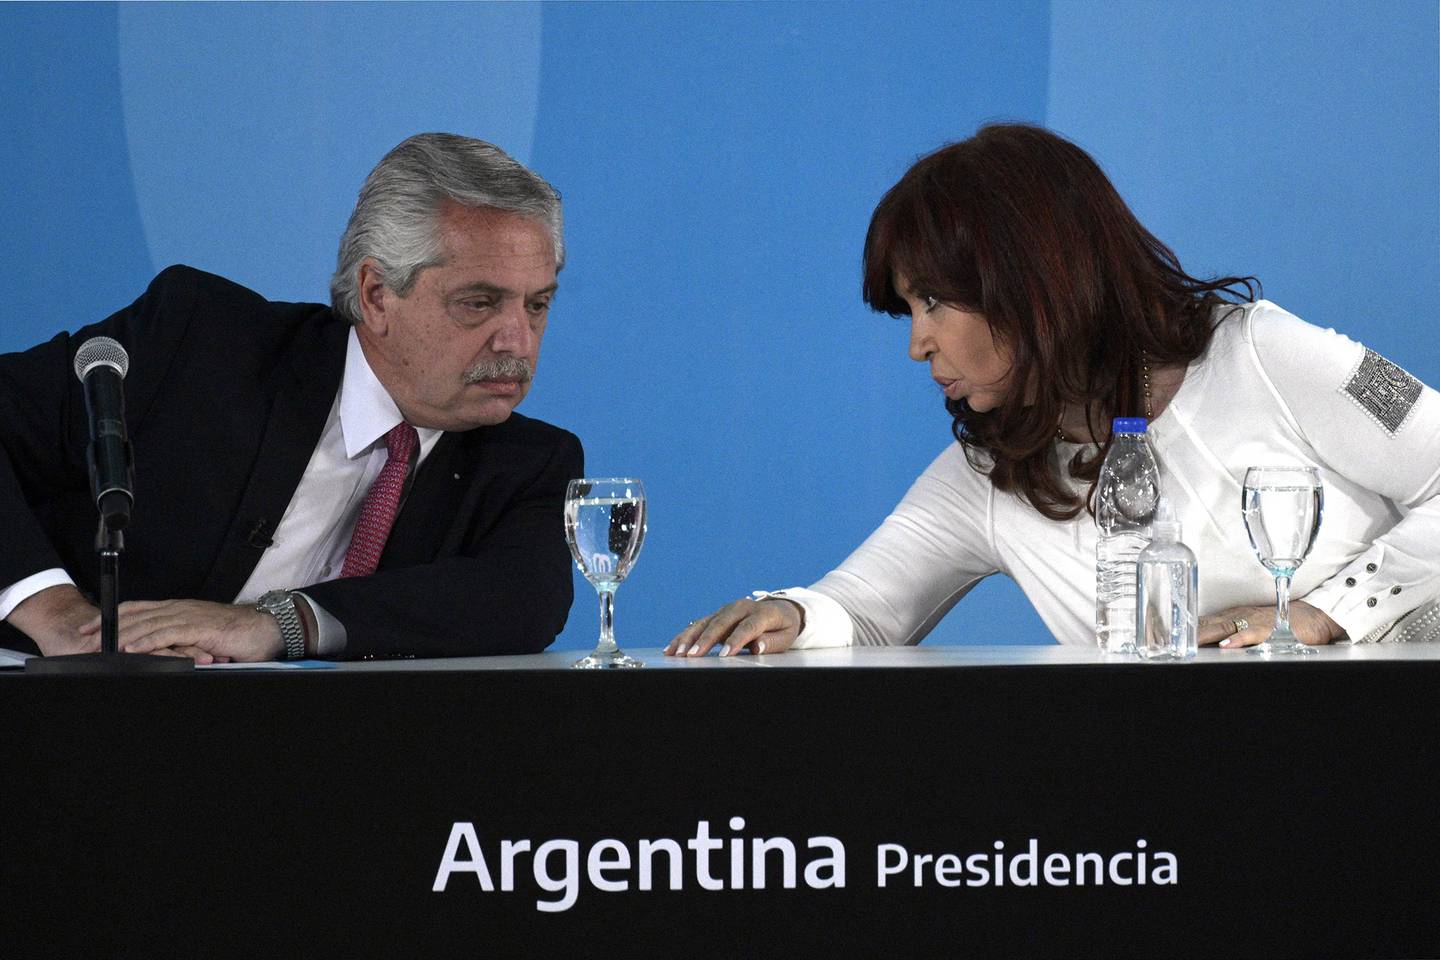 Alberto Fernández y Cristina Fernández de Kirchner en la Casa Rosada en Buenos Aires en Septiembre 30, 2021. Foto: AFPdfd